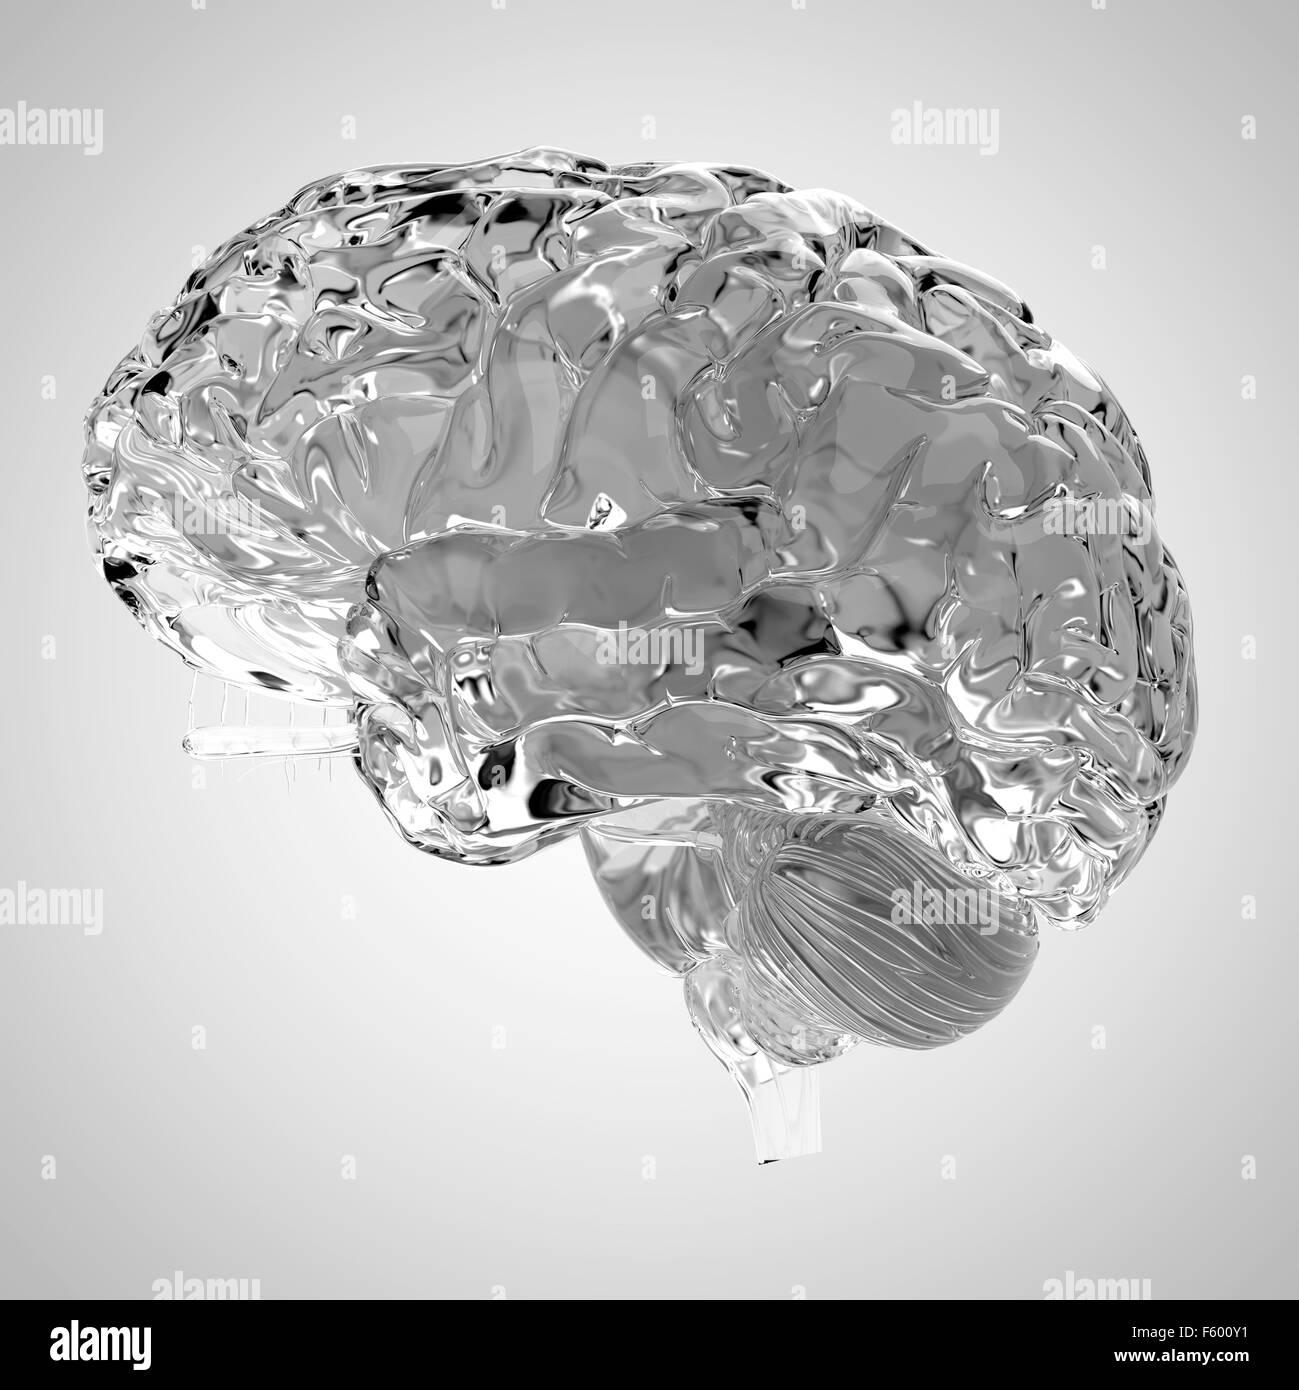 Dal punto di vista medico illustrazione accurata di un cervello glas Foto Stock